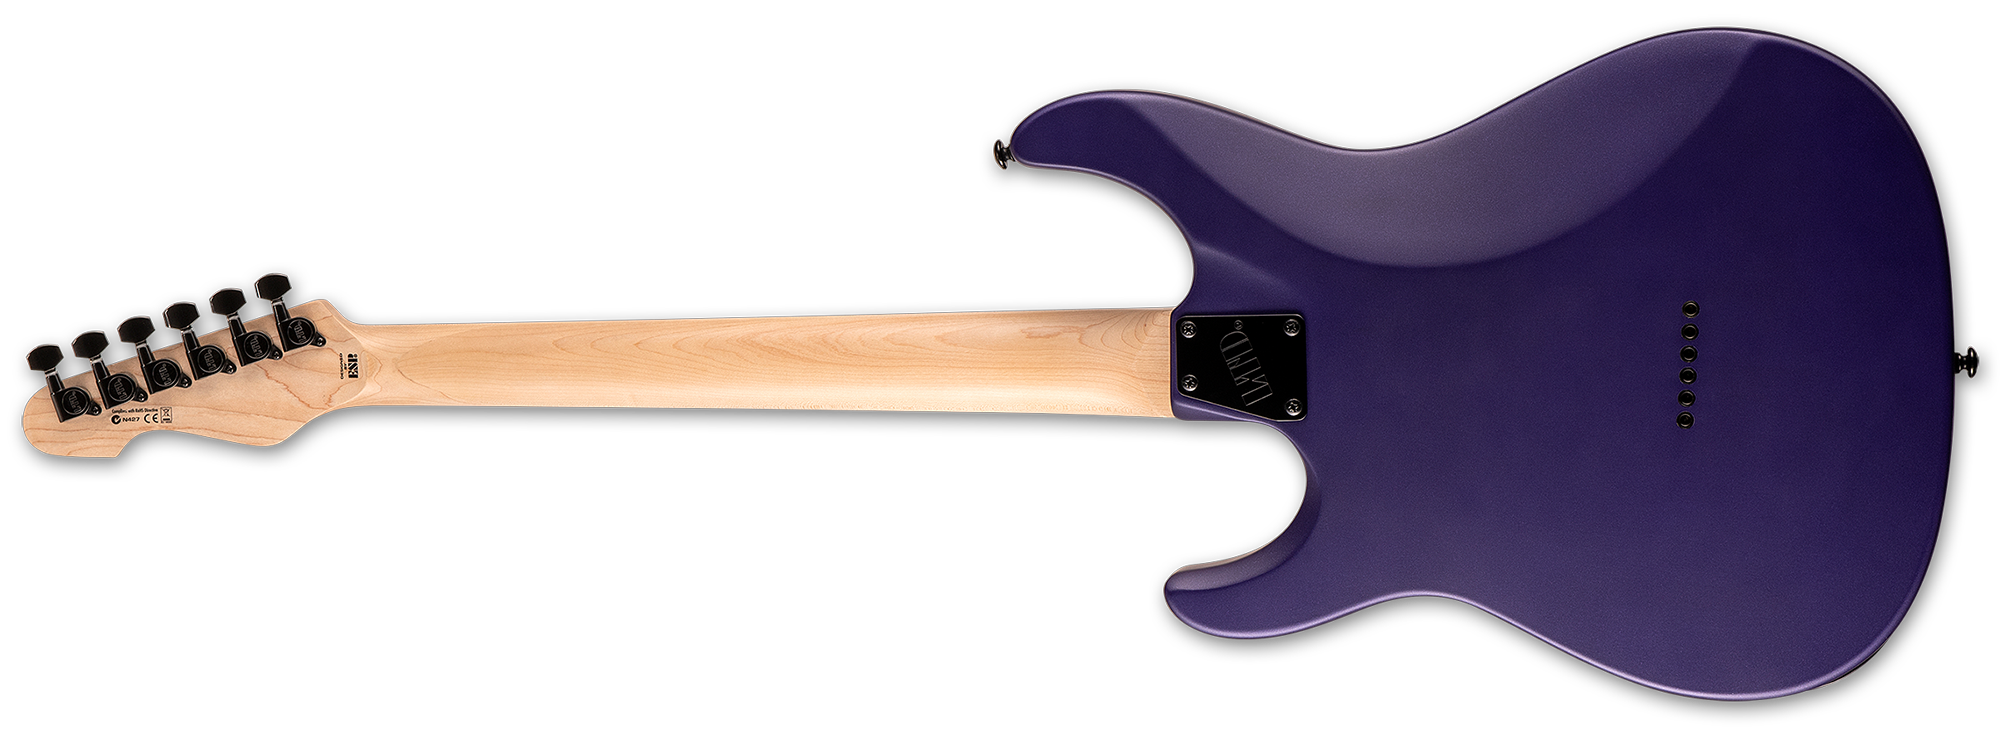 Ltd Sn-200ht Hh Ht Mn - Dark Metallic Purple Satin - Elektrische gitaar in Str-vorm - Variation 2